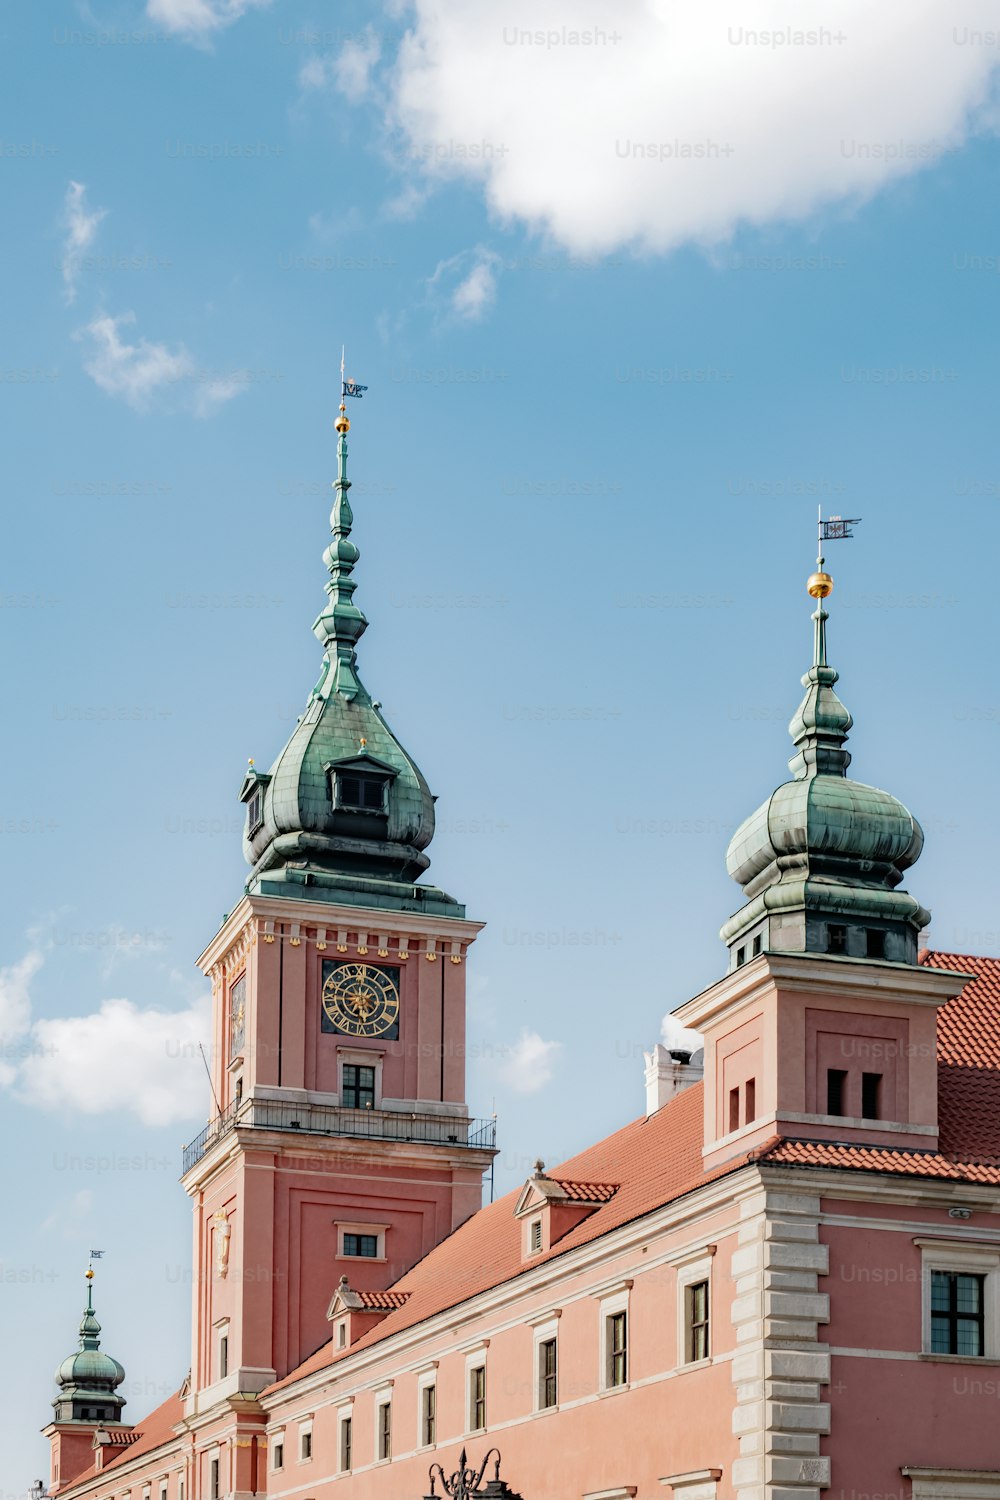 두 개의 탑과 시계가 있는 큰 건물